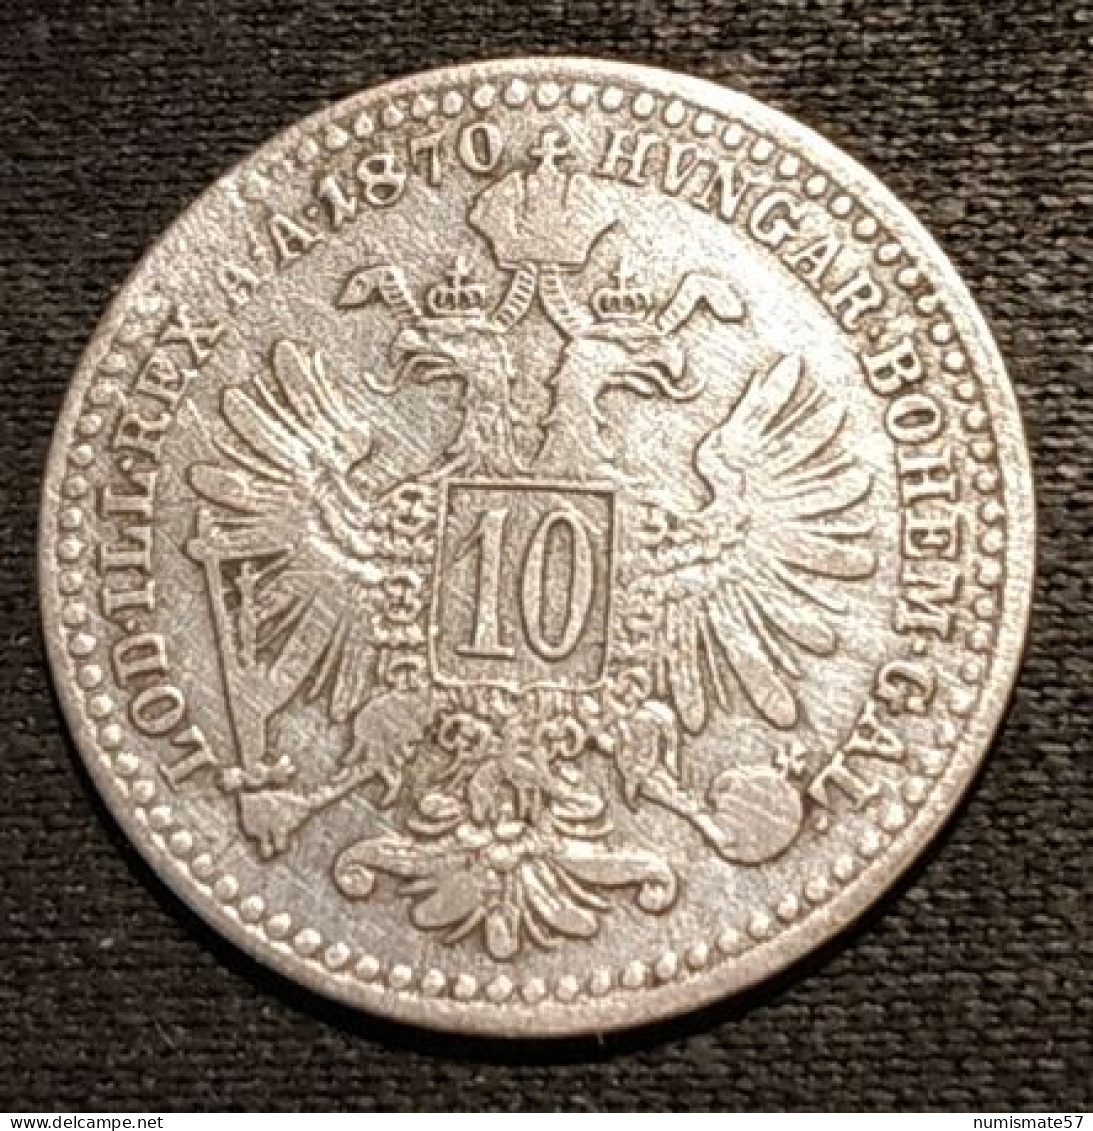 AUTRICHE - AUSTRIA - 10 KREUZER 1870 - Argent - Silver - Franz Joseph I - KM 2206 - Autriche